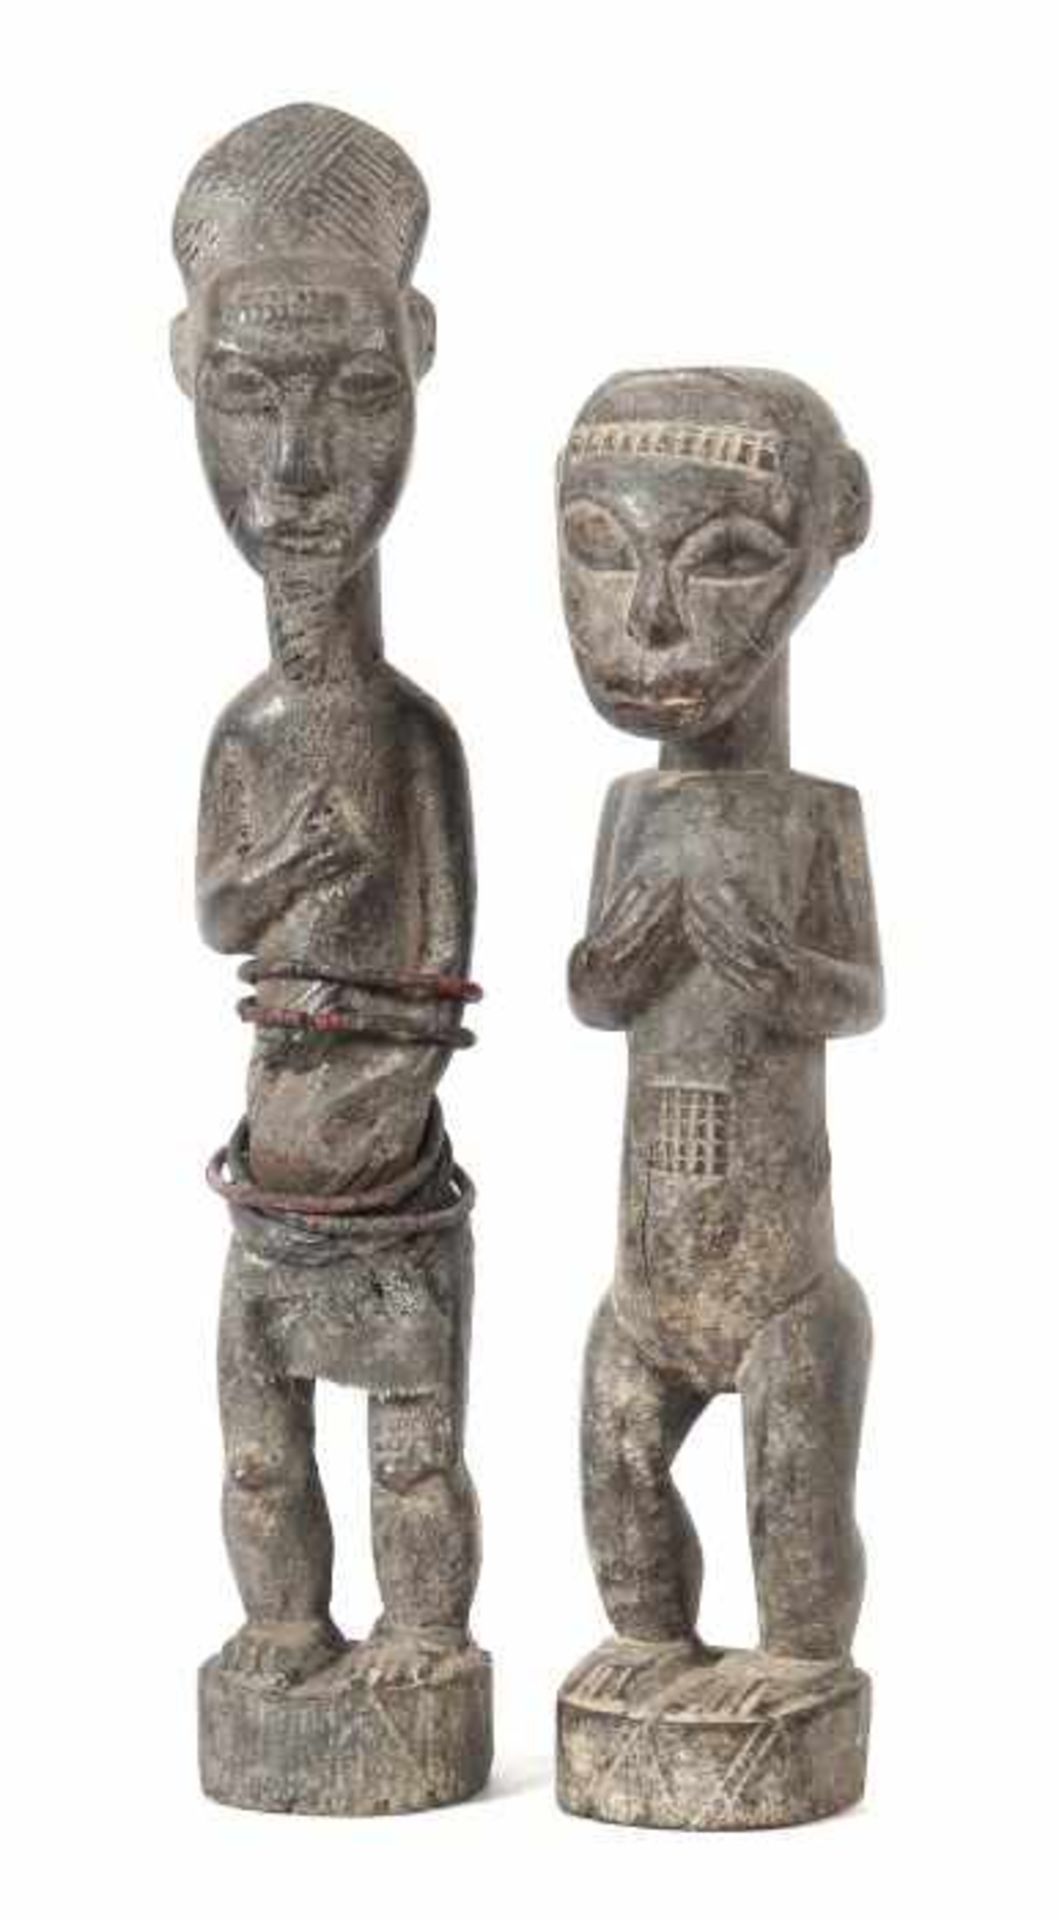 Zwei Standfiguren der BauleElfenbeinküste, Holz geschnitzt mit schwarzer teils krustiger Patina, die